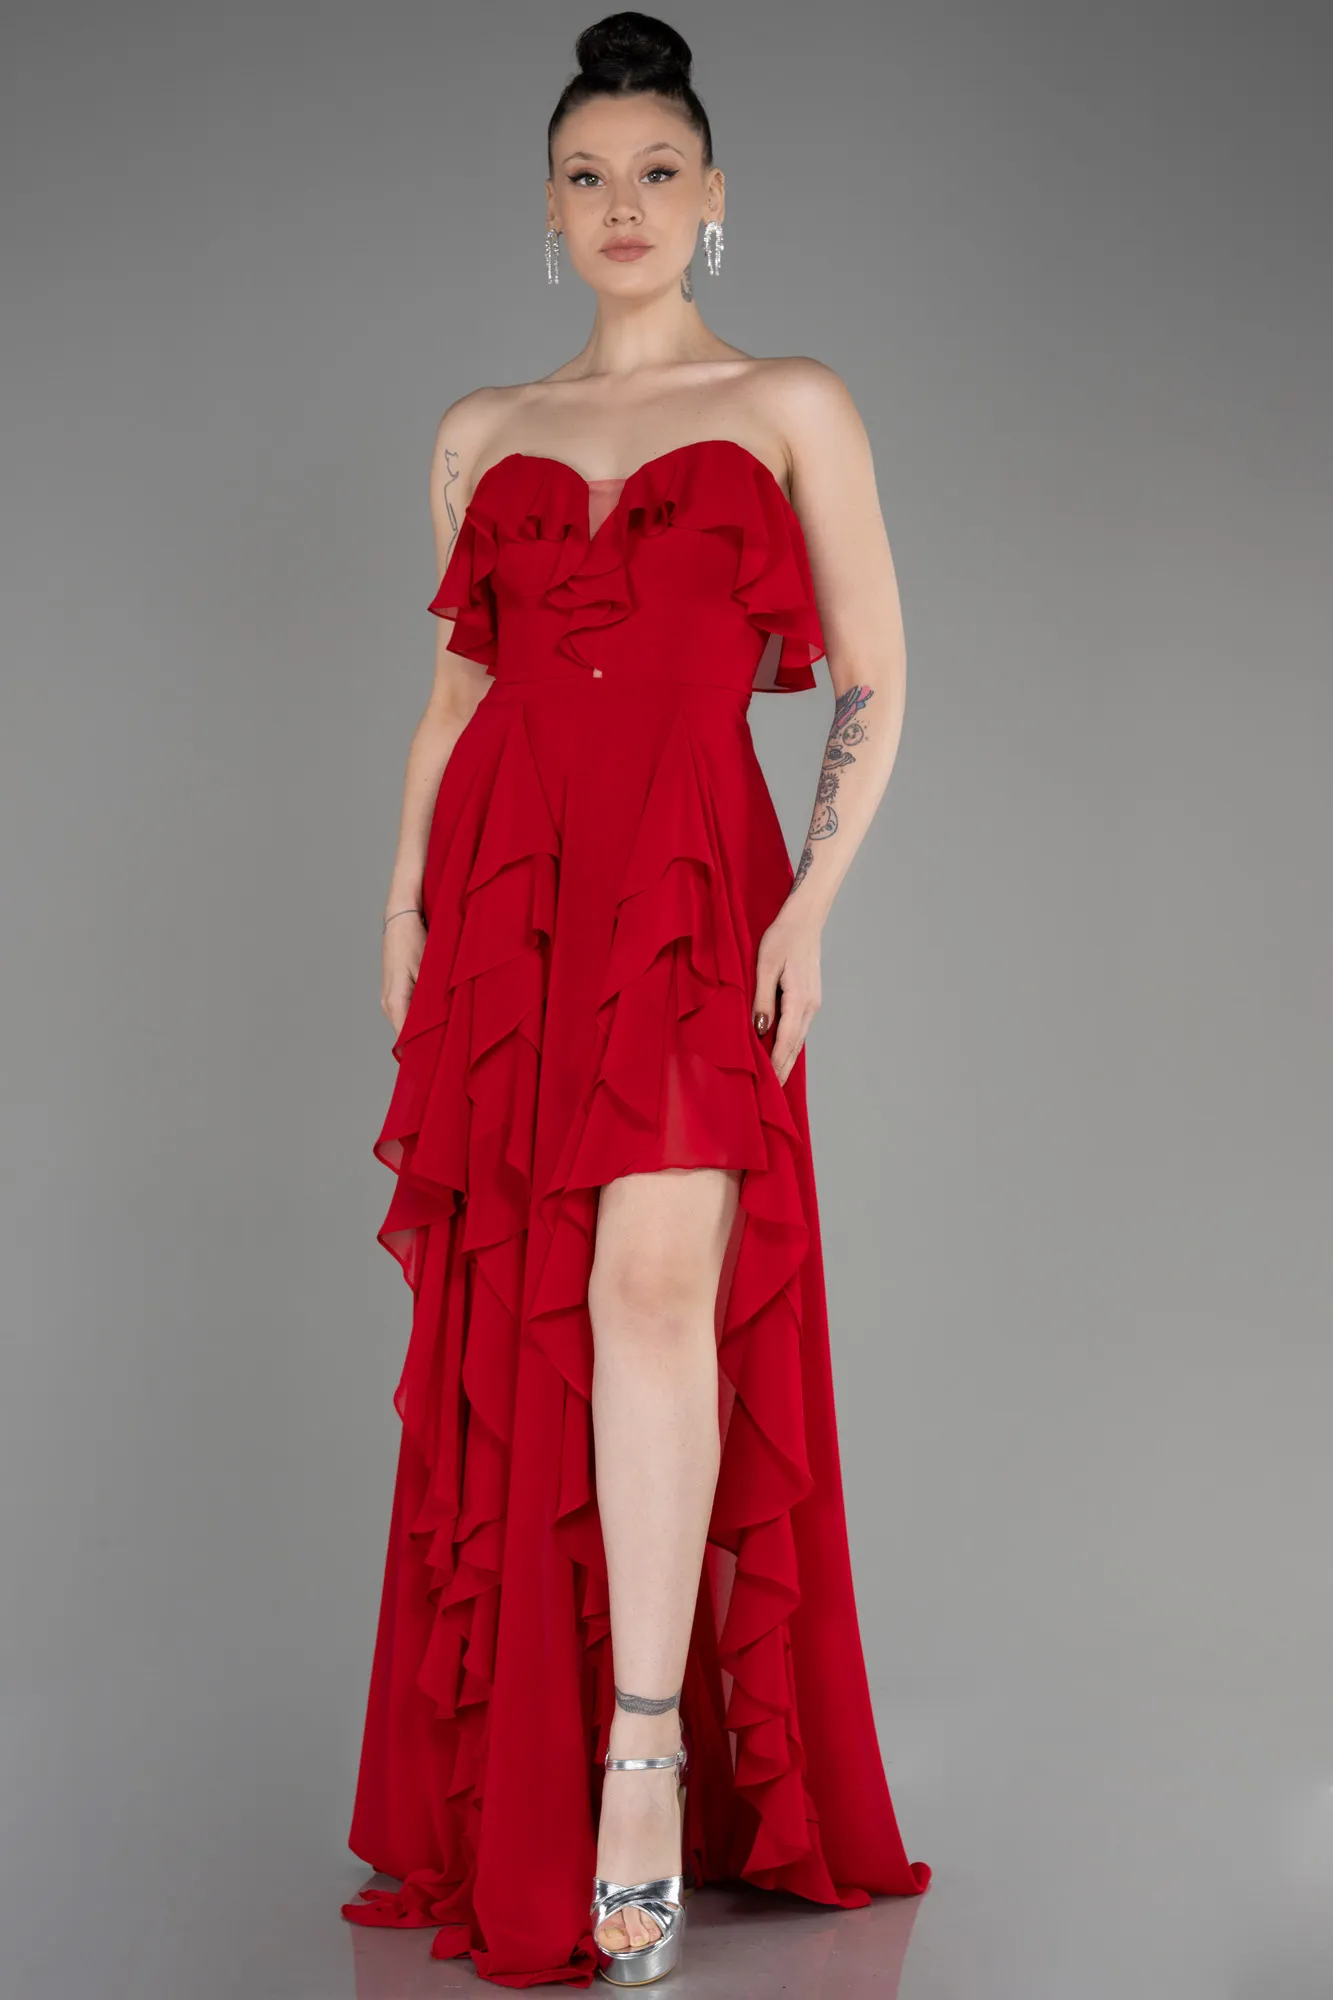 Red-Strapless Long Chiffon Prom Dress ABU3838